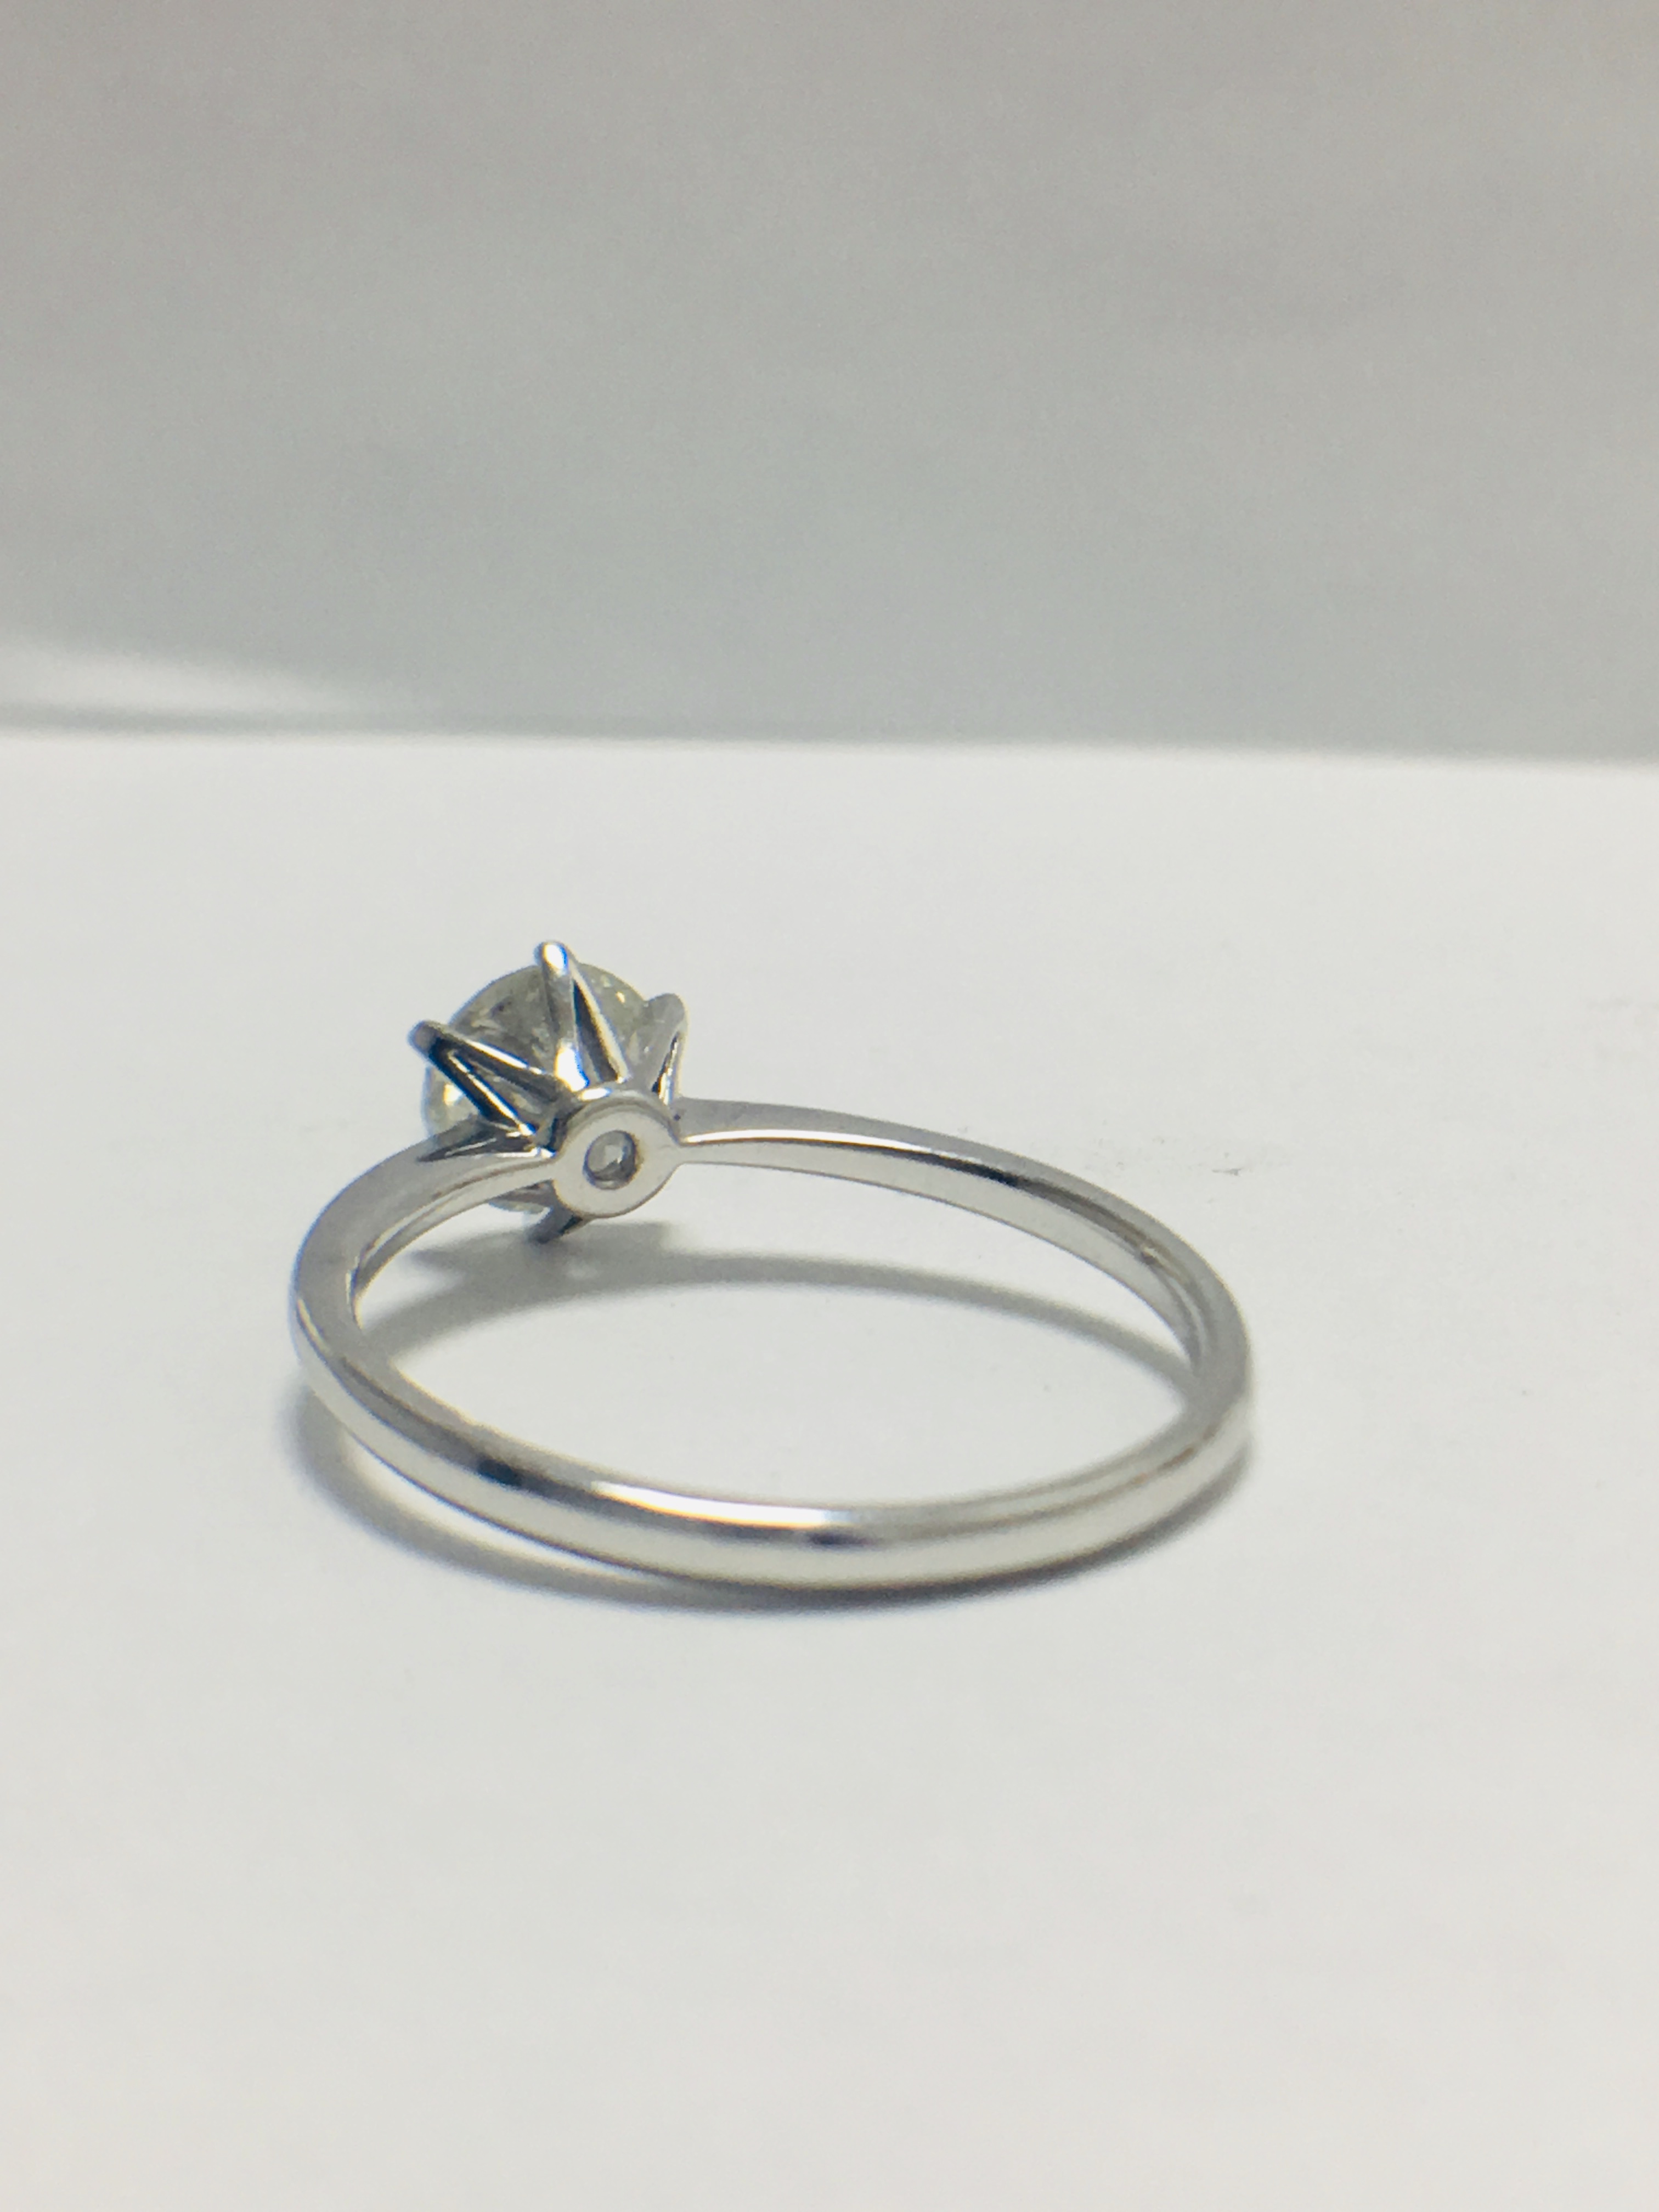 Platinum 1 carat diamond solitaire ring,WGI certification - Image 4 of 10